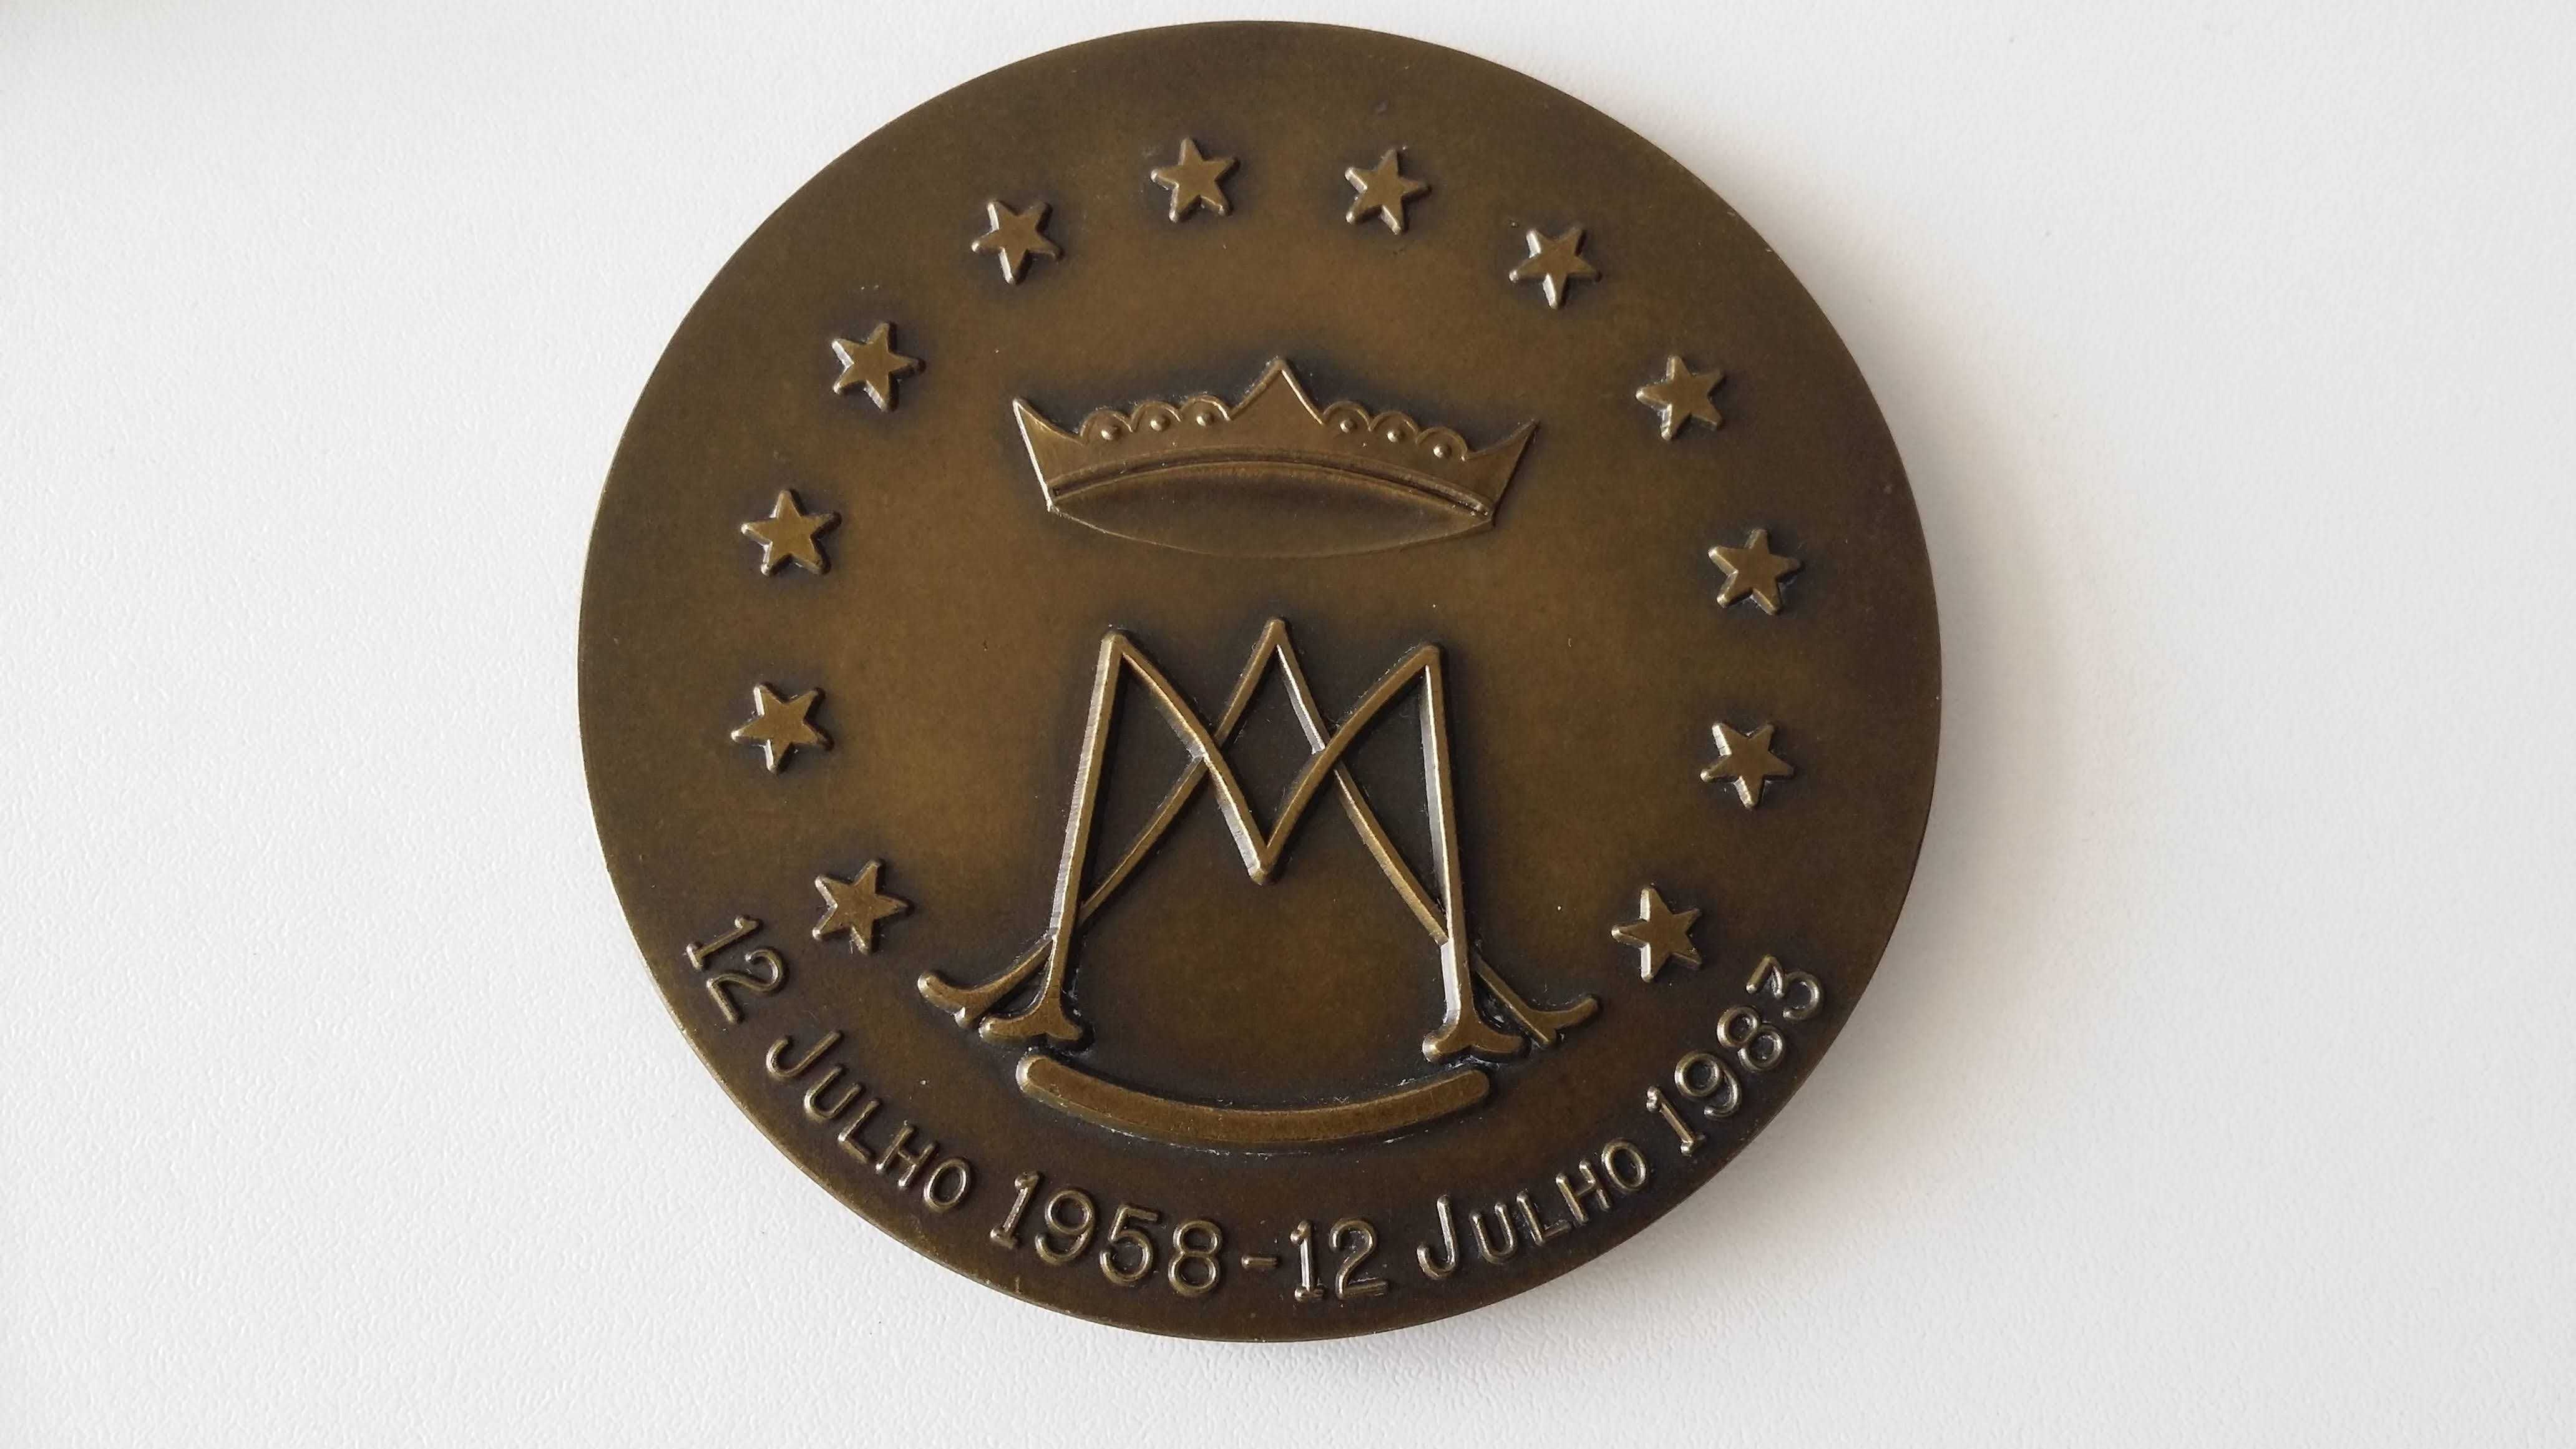 Medalha bronze comemorativa 25 anos Igreja Paroquial Amadora 1983